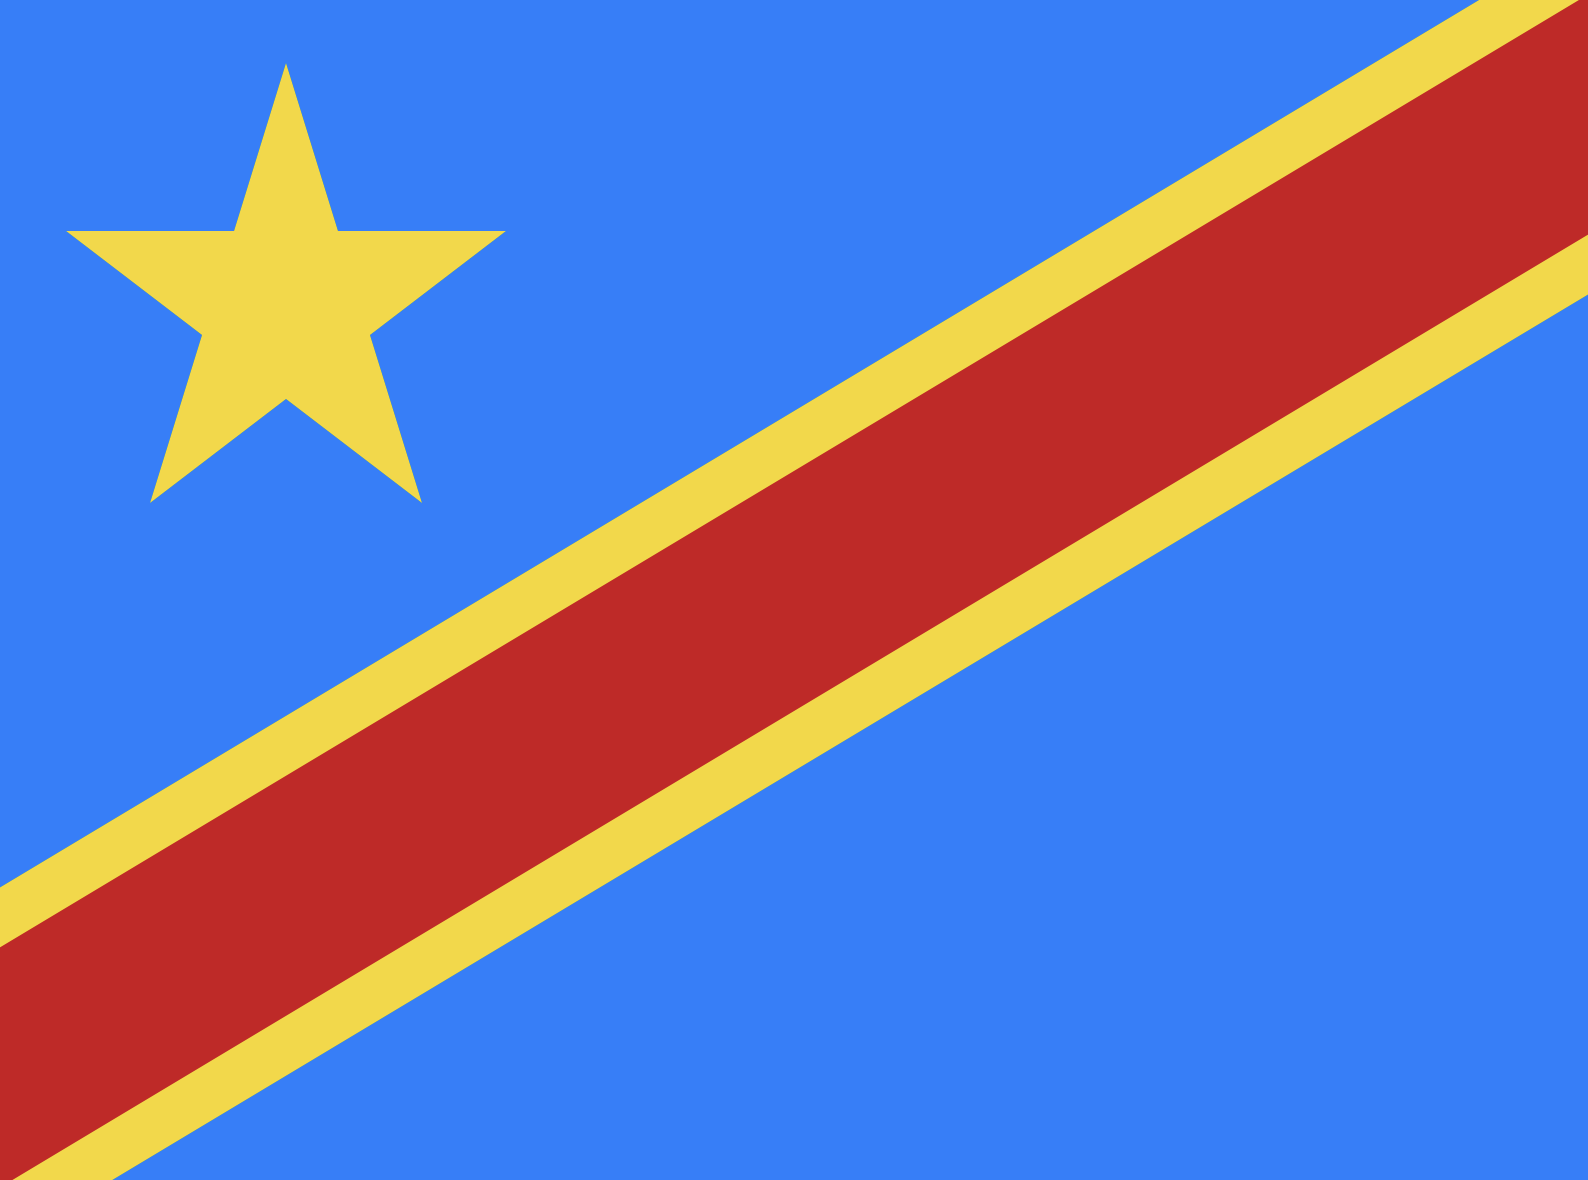 Democratic Republic of Congo - Proxy